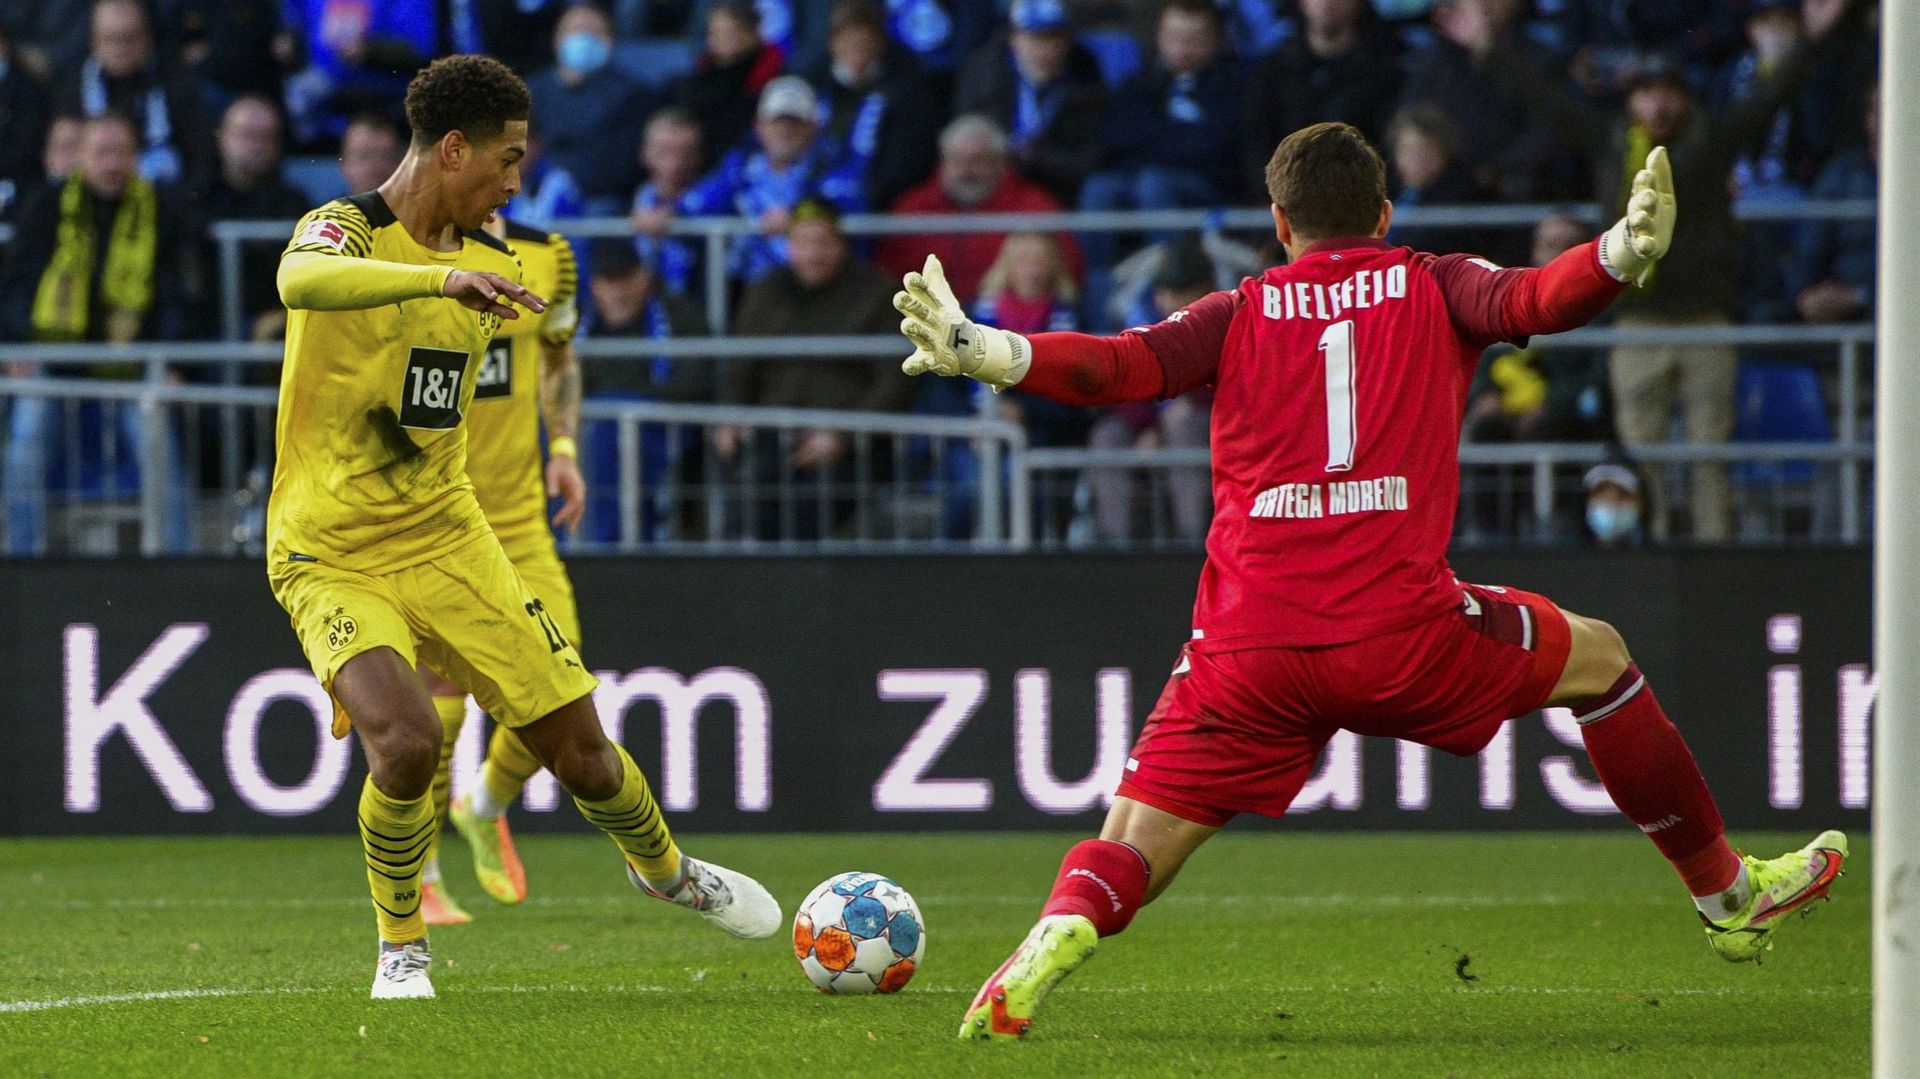 Le détail du geste technique de Jude Bellingham (Borussia Dortmund) face à l’Arminia Bielefeld